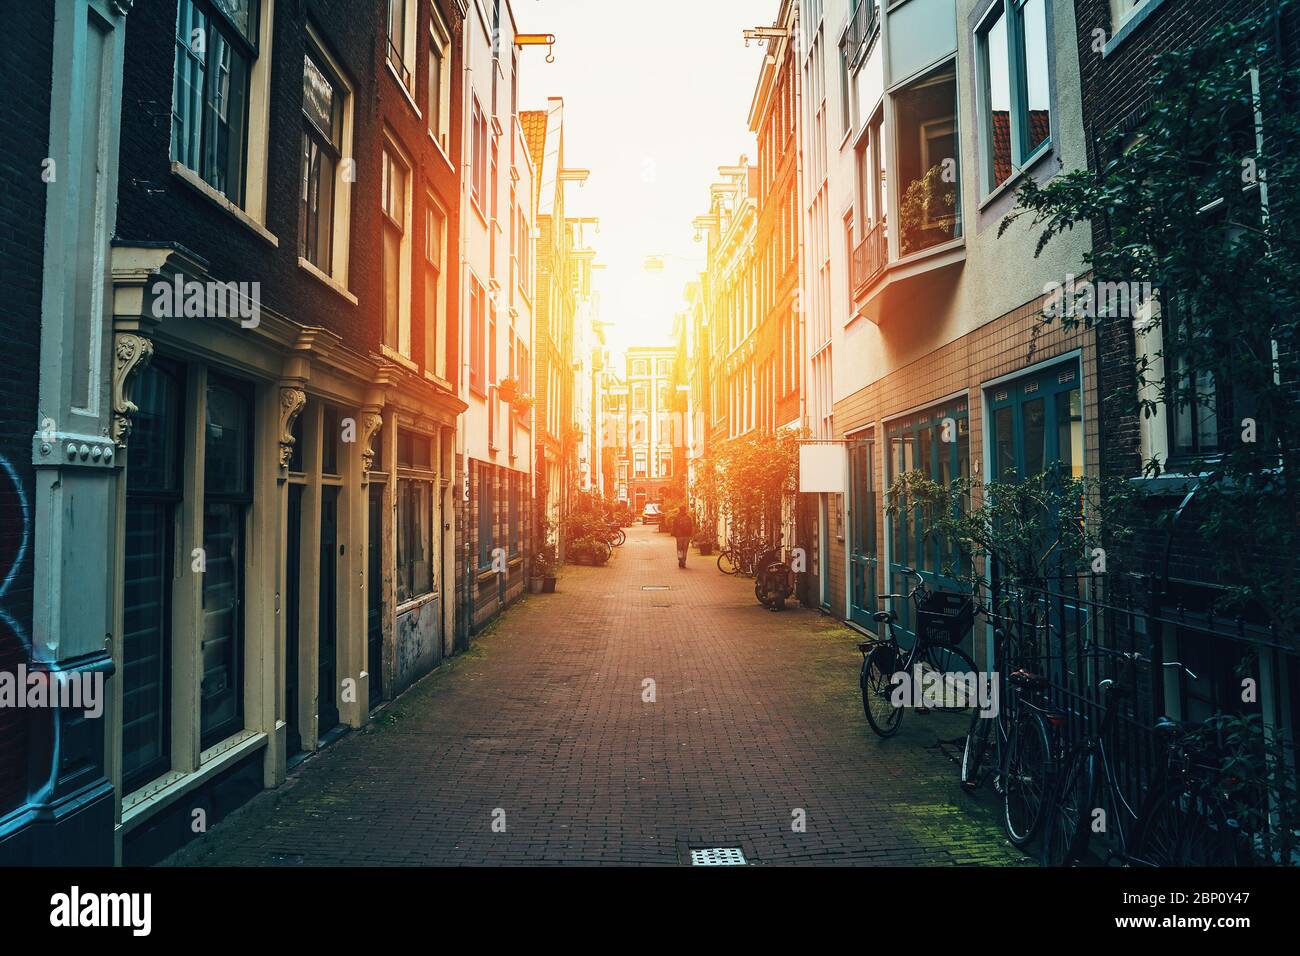 Via di Amsterdam, vecchia strada stretta in centro al tramonto, tonico Foto Stock